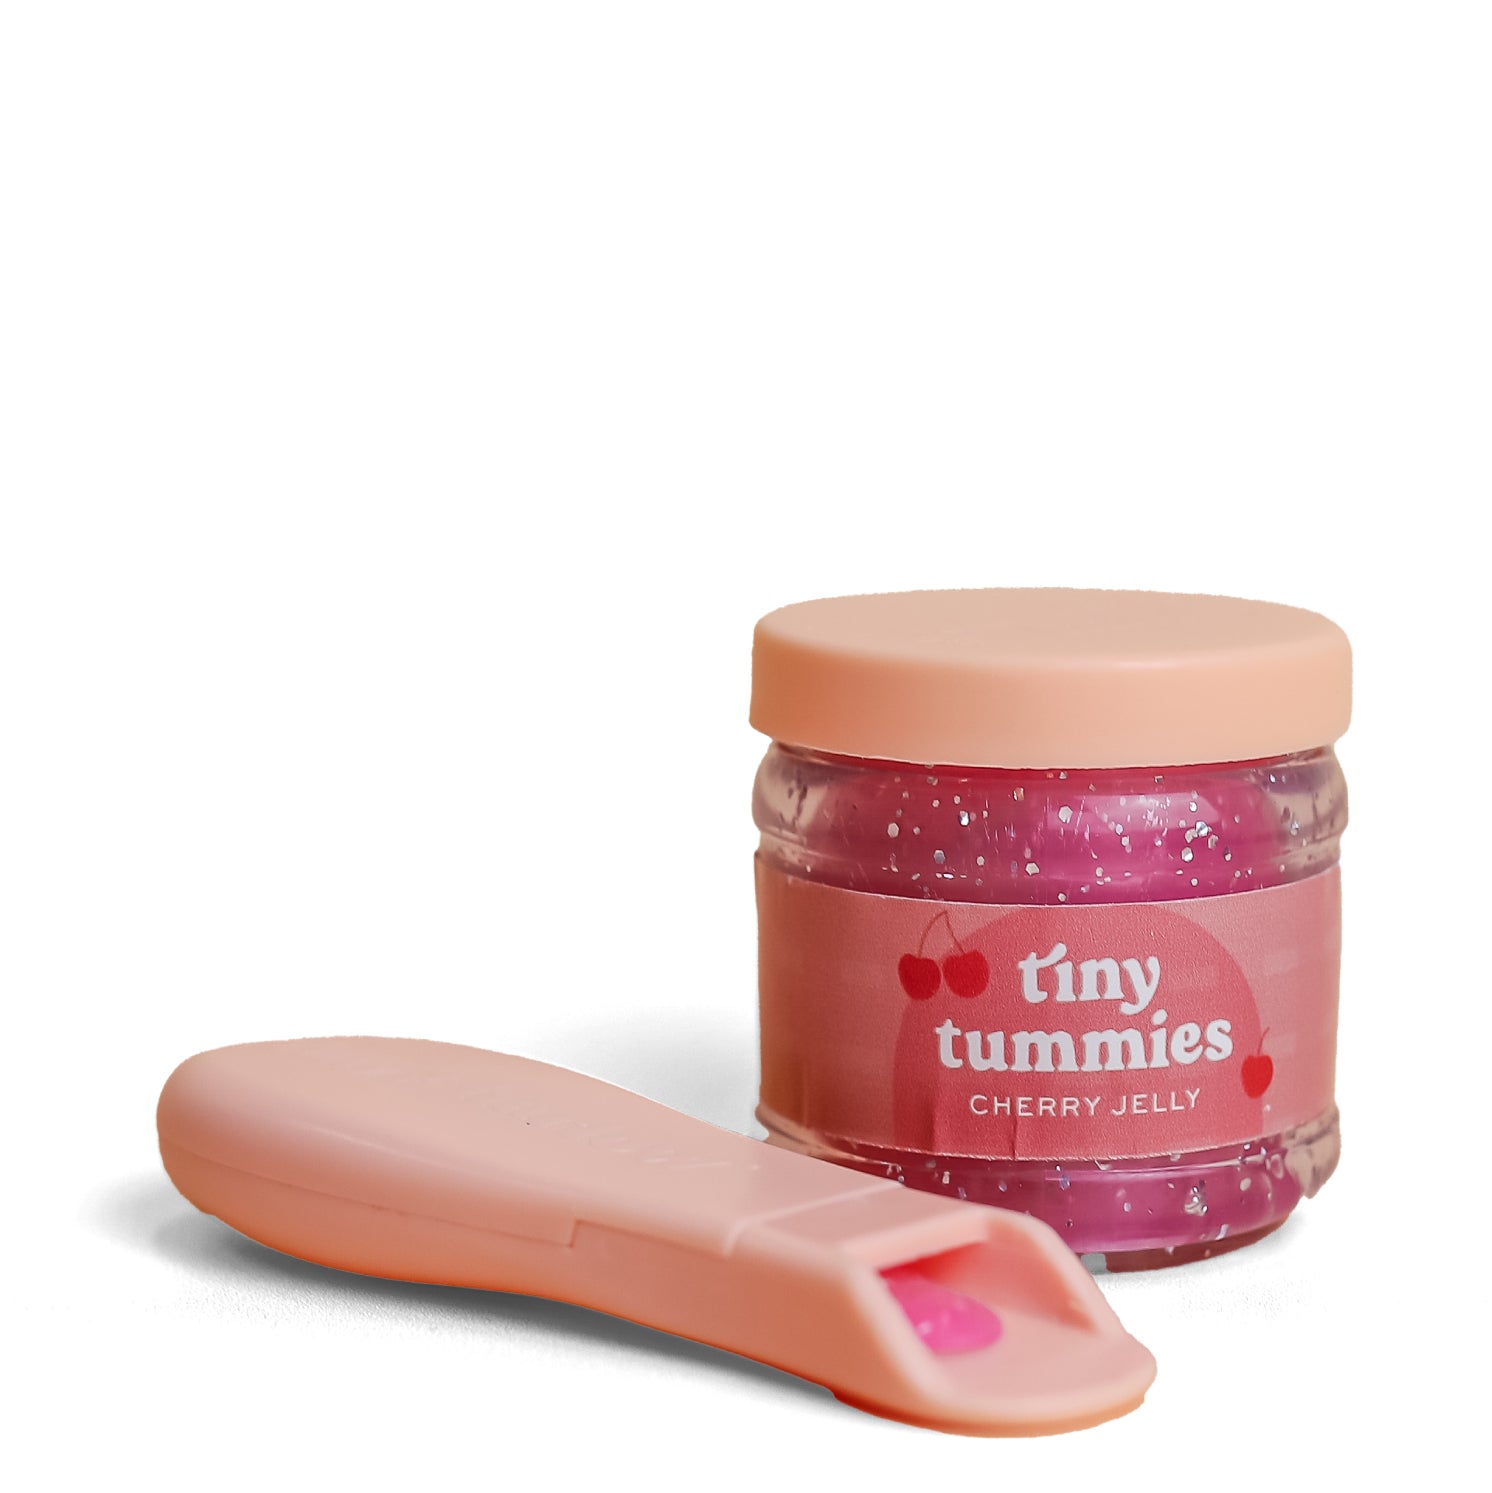 Tiny Harlow Tiny Tummies – Cherry Jelly (Limited Edition)